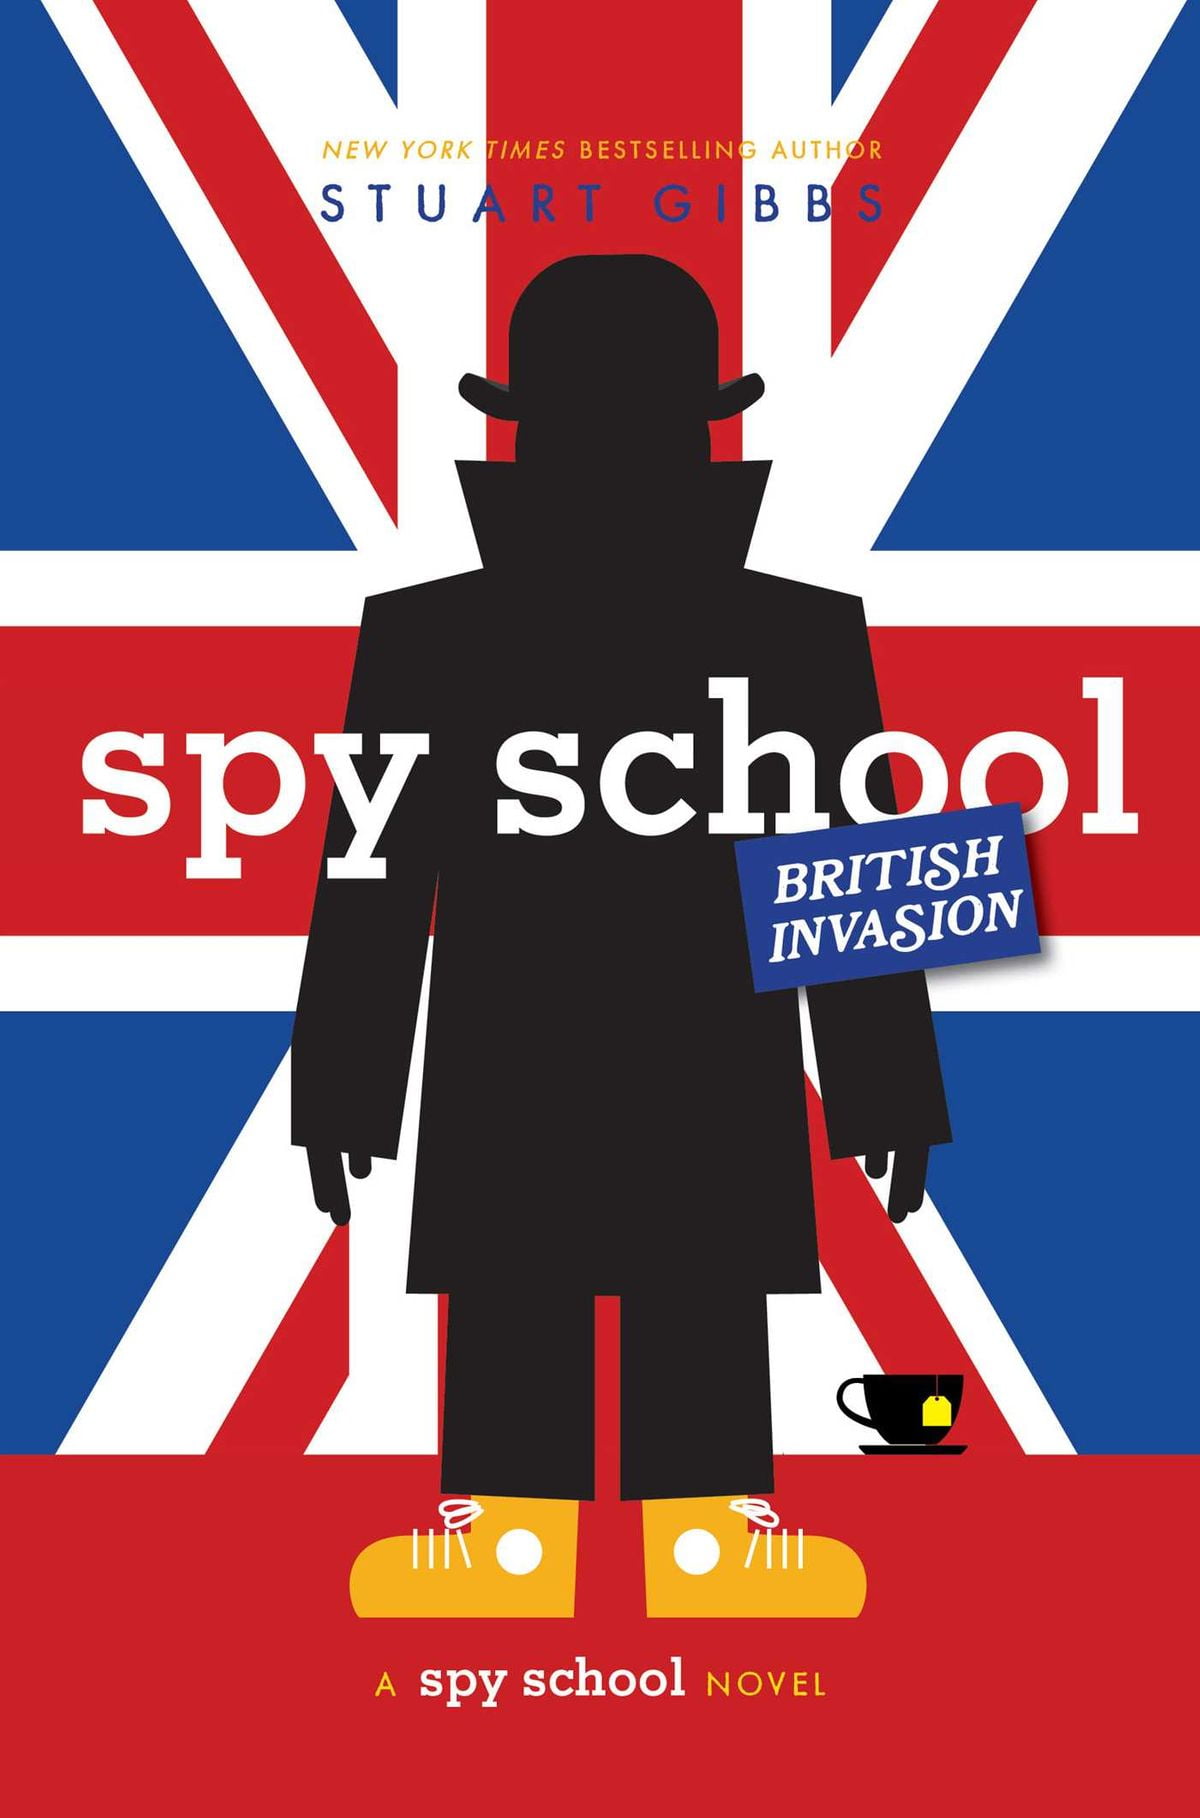 Spy School Revolution by Stuart Gibbs